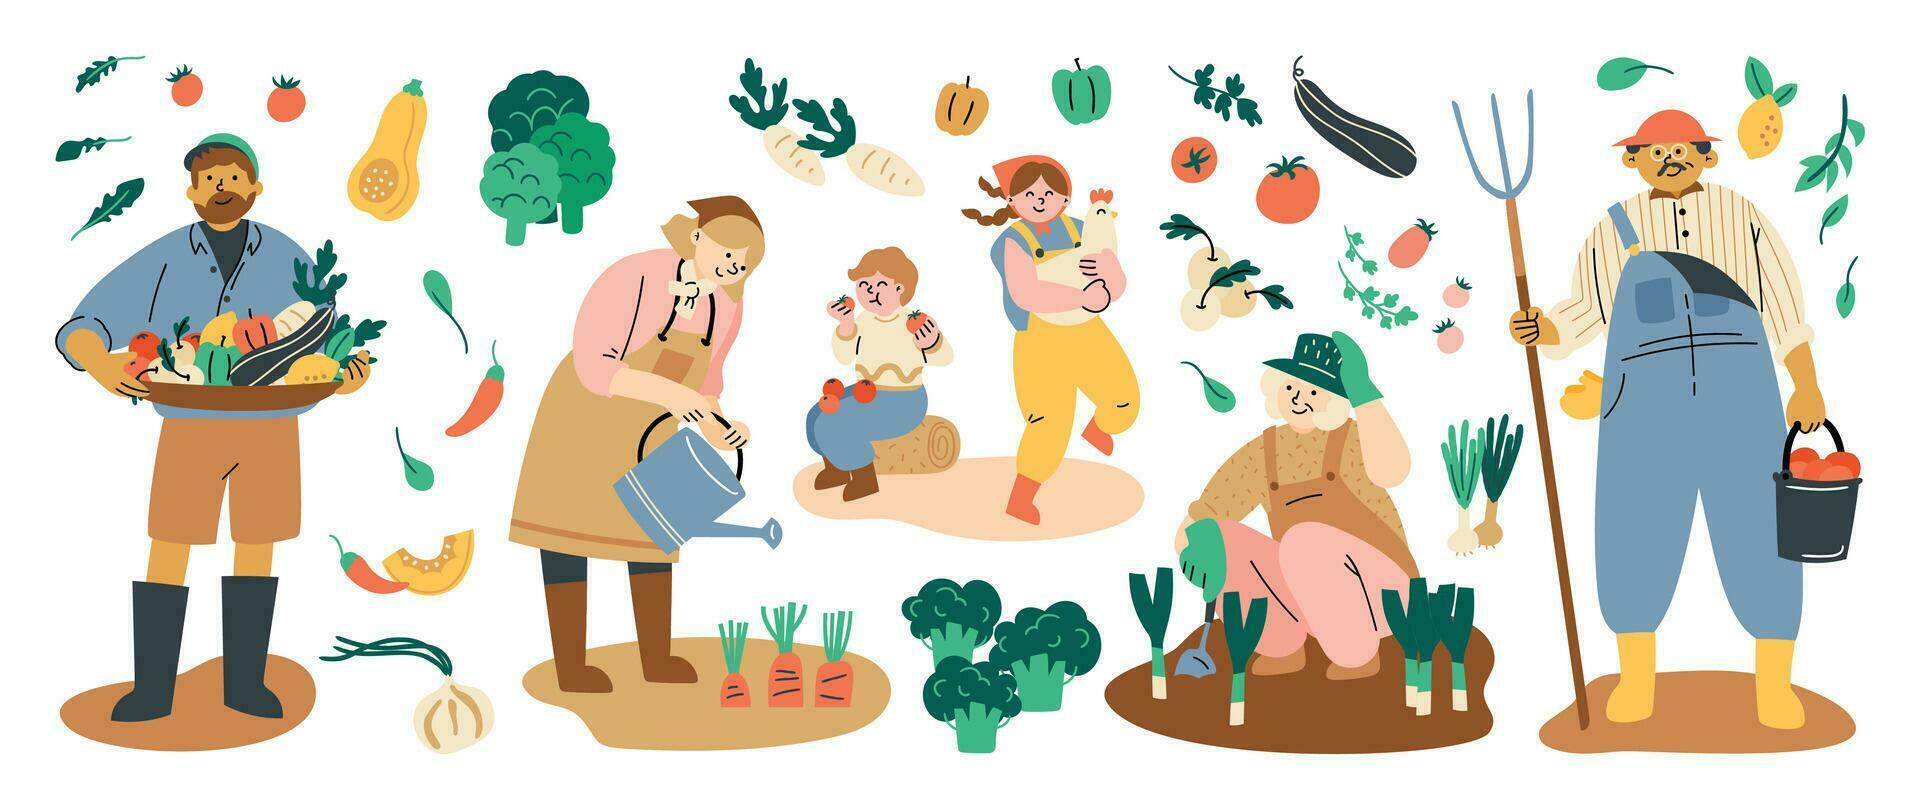 äta lokal- vektor illustration uppsättning. organisk jordbruk med människor jordbrukare håller på med jordbruk jobb, plantering, lokal- organisk produktion, frukt och grönsaker, lantbruk och trädgårdsarbete, modern jordbrukare marknadsföra.